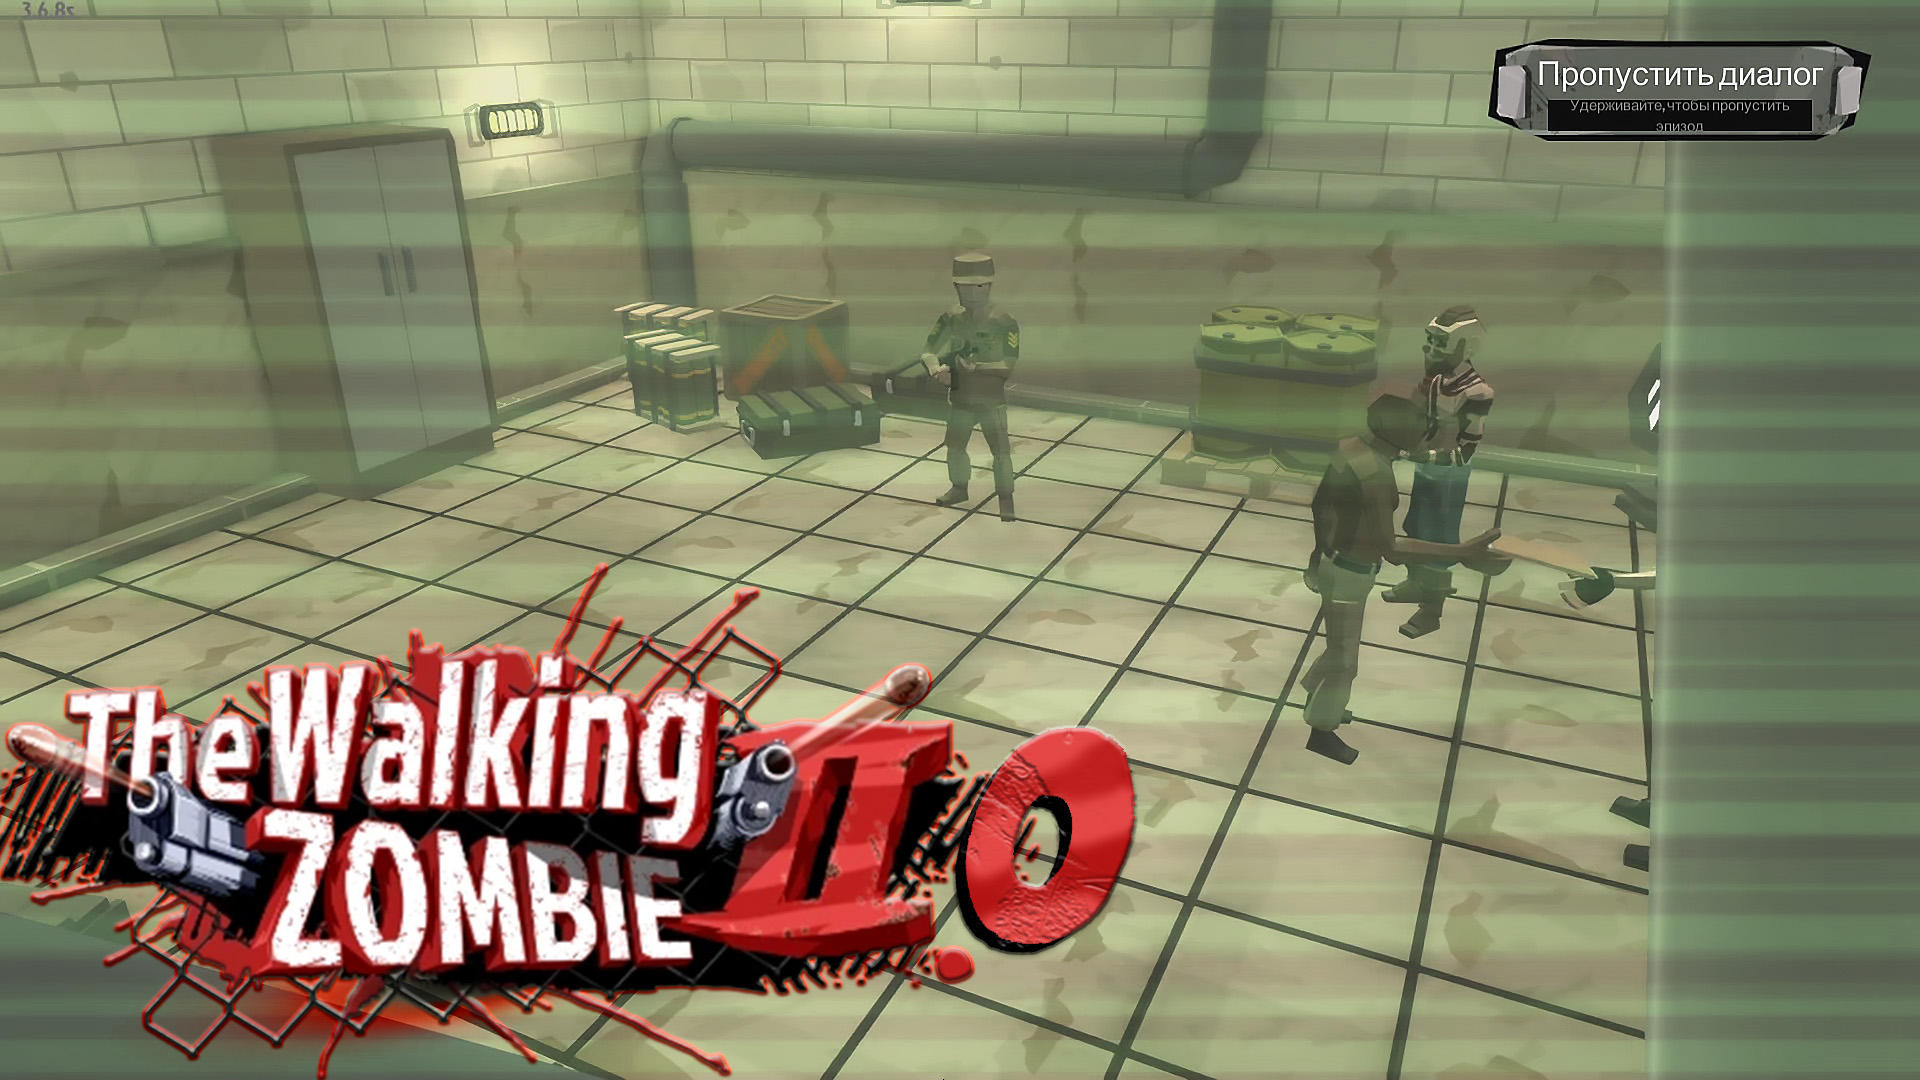 The Walking Zombie 2.0 ► Секретные планы под секретной камерой